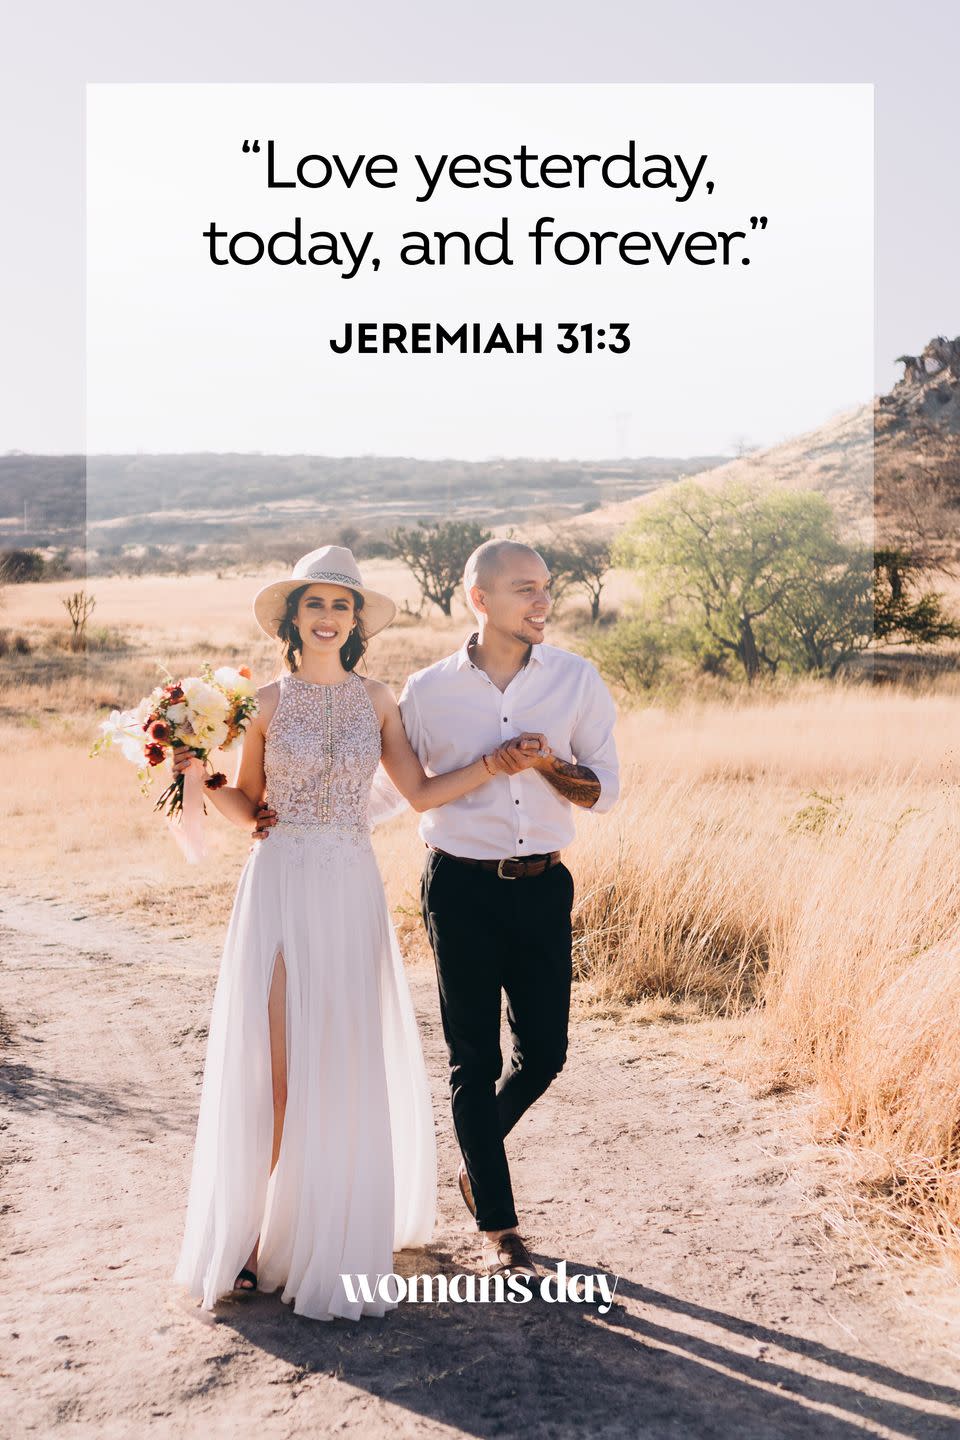 19) Jeremiah 31:3